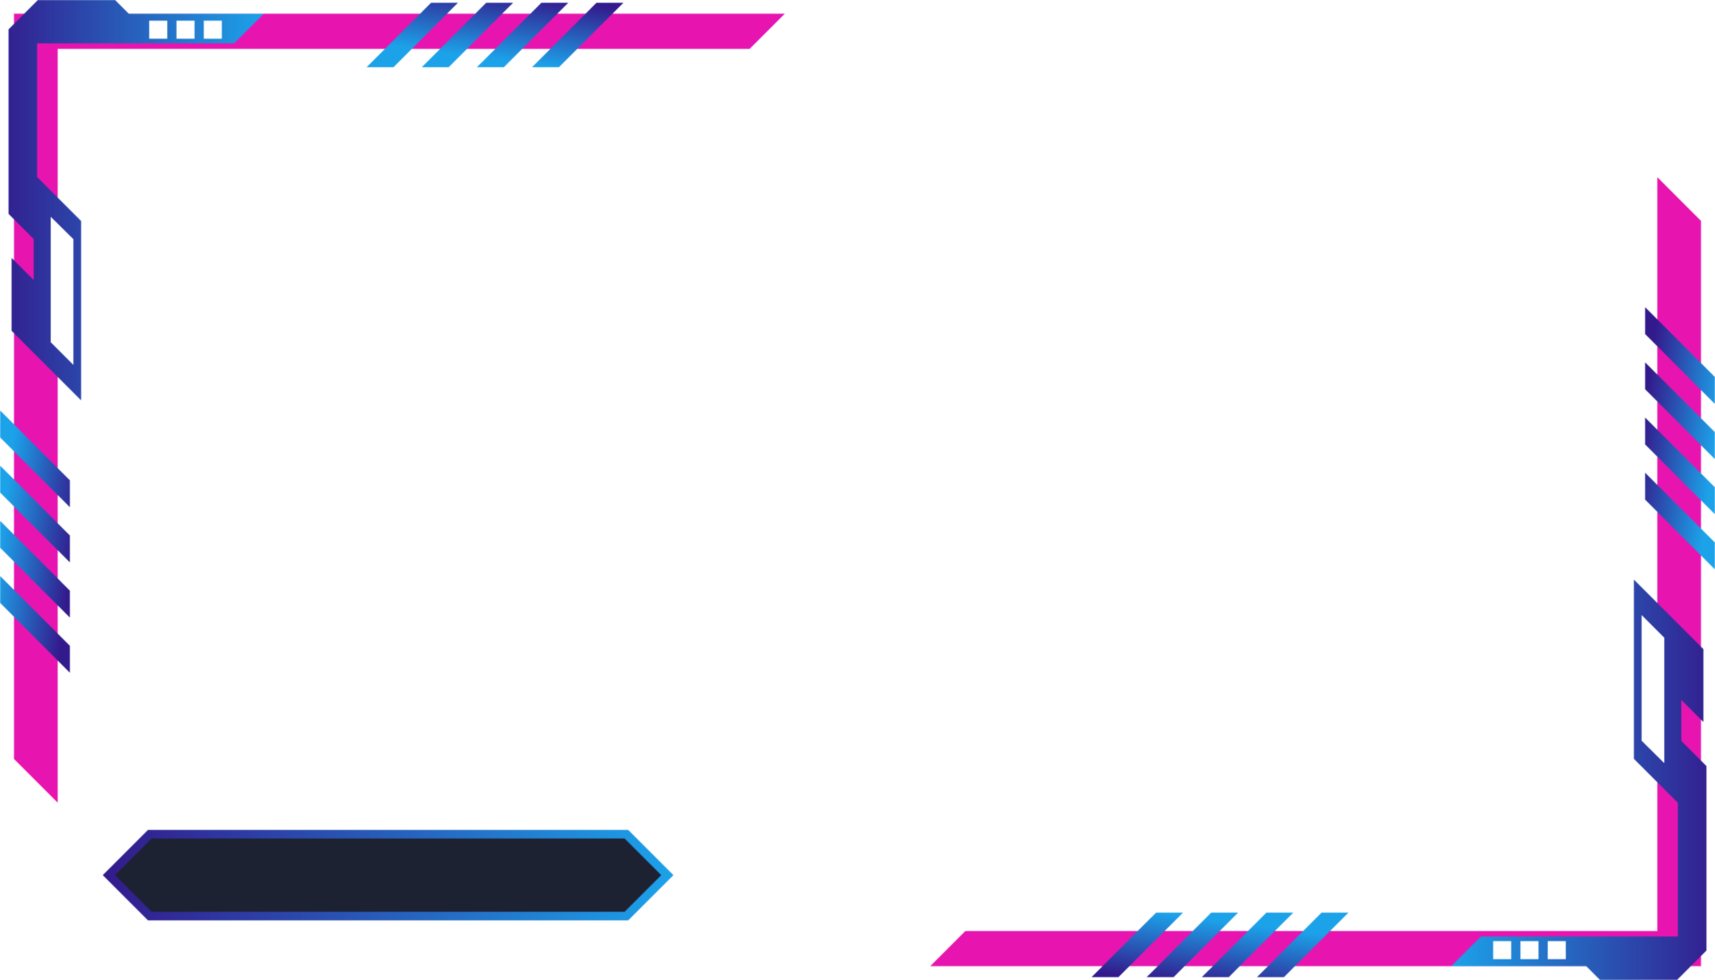 gemakkelijk futuristische gaming scherm paneel PNG met abstract vormen. online spel streaming bedekking en gebruiker koppel ontwerp met roze en blauw kleuren. metalen gaming bedekking paneel afbeelding.